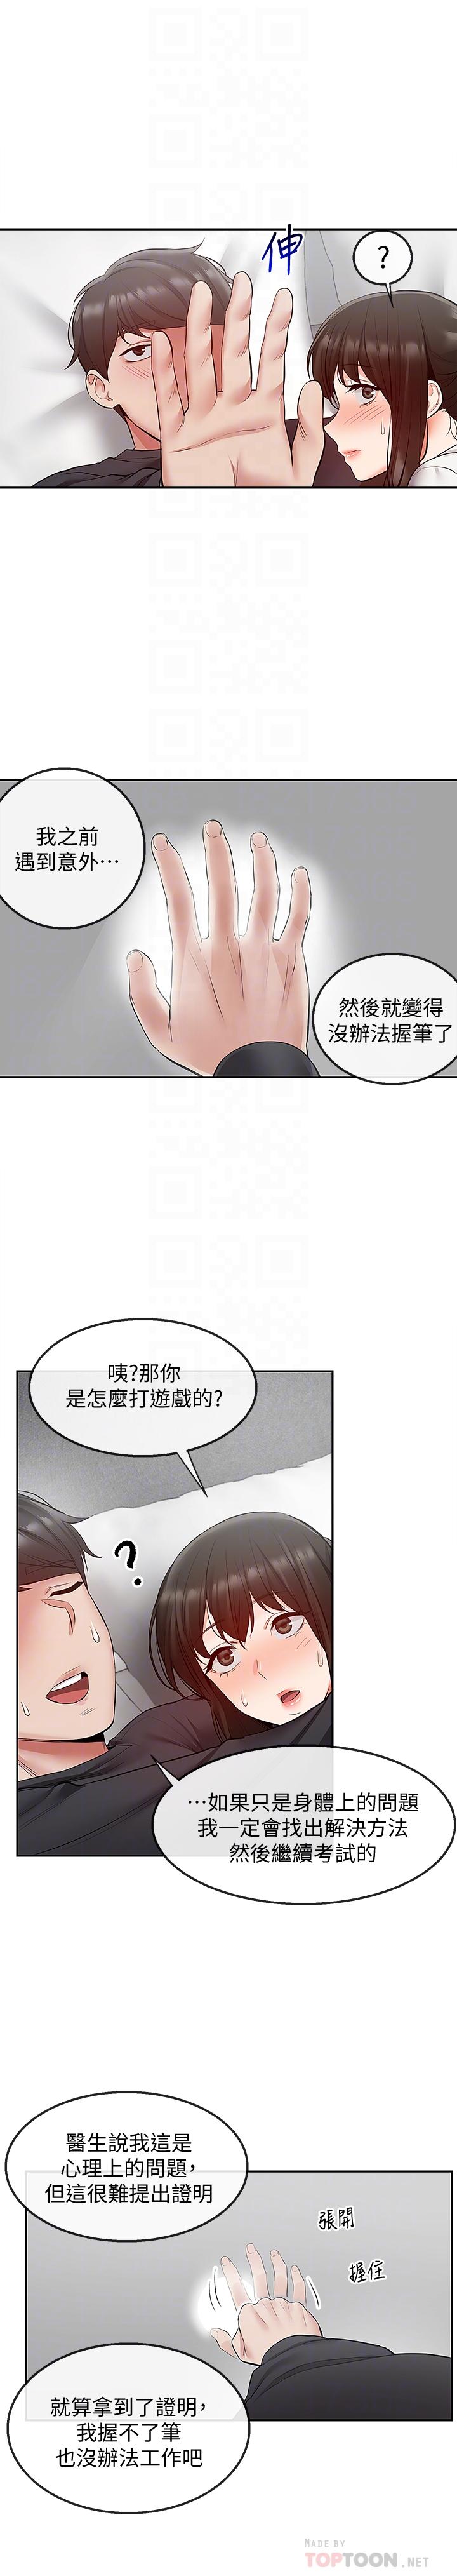 《深夜噪音》漫画 第29话 - 妍希这次真的生气了?